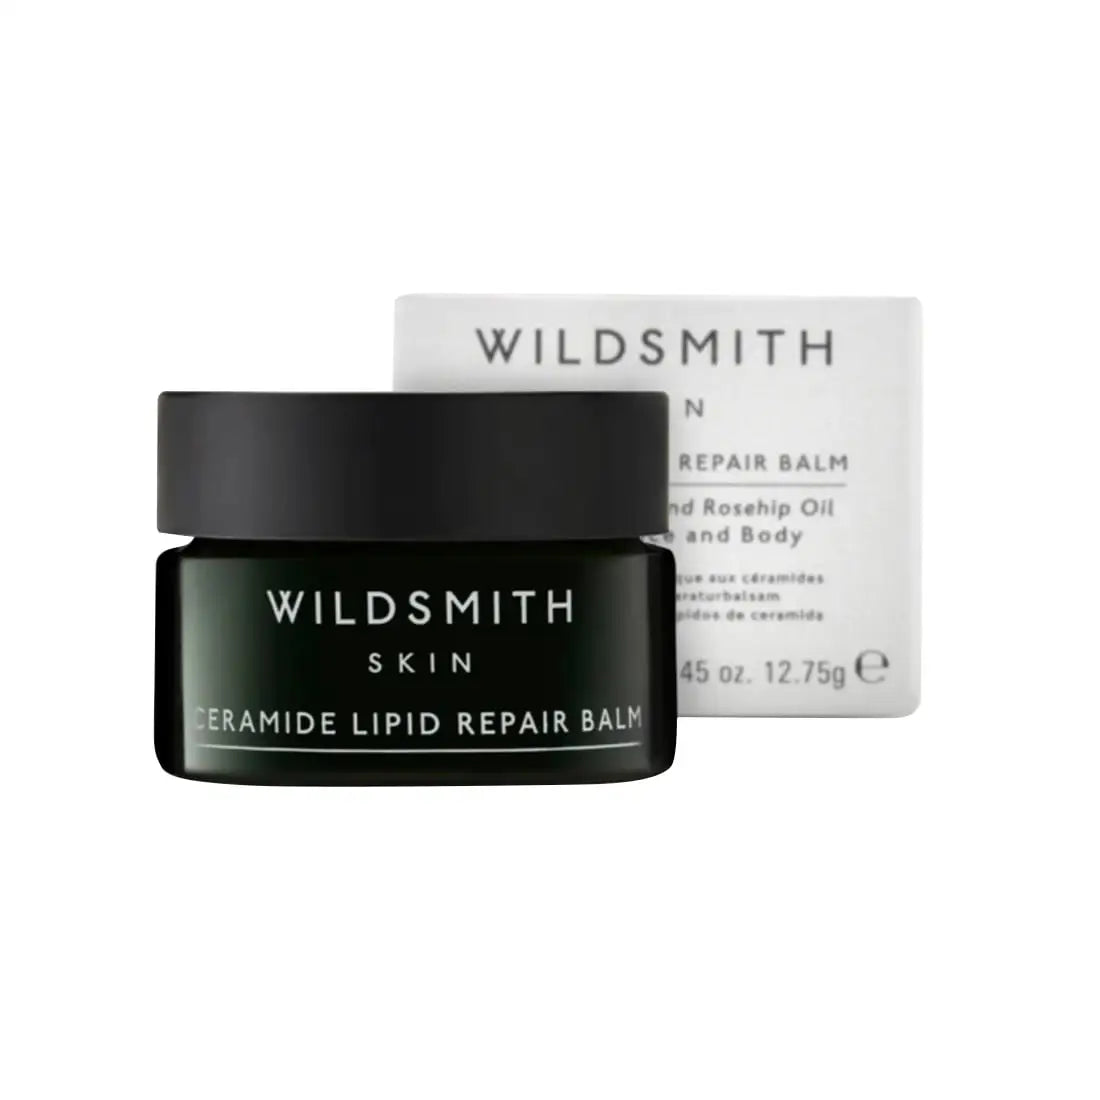 Wildsmith Skin Ceramide Lipid Repair Balm 12.75gr